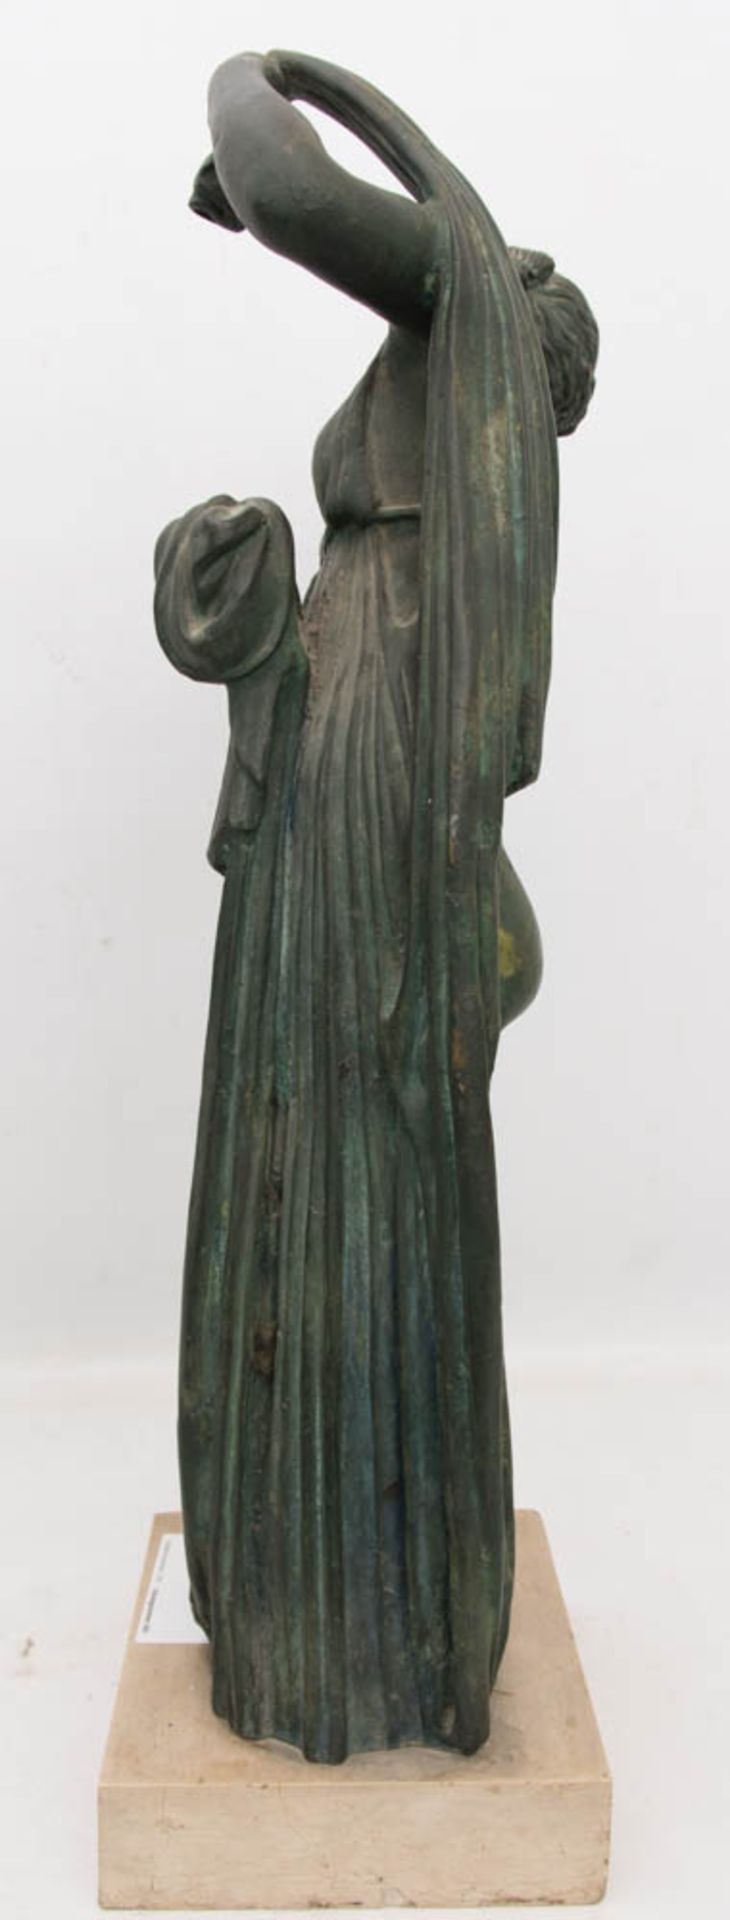 SKULPTUR, Die Badende, wohl bemalter Zinkguss auf Steinsockel, 20. Jh.Sehr gut erhaltene Skulptur.68 - Bild 5 aus 6